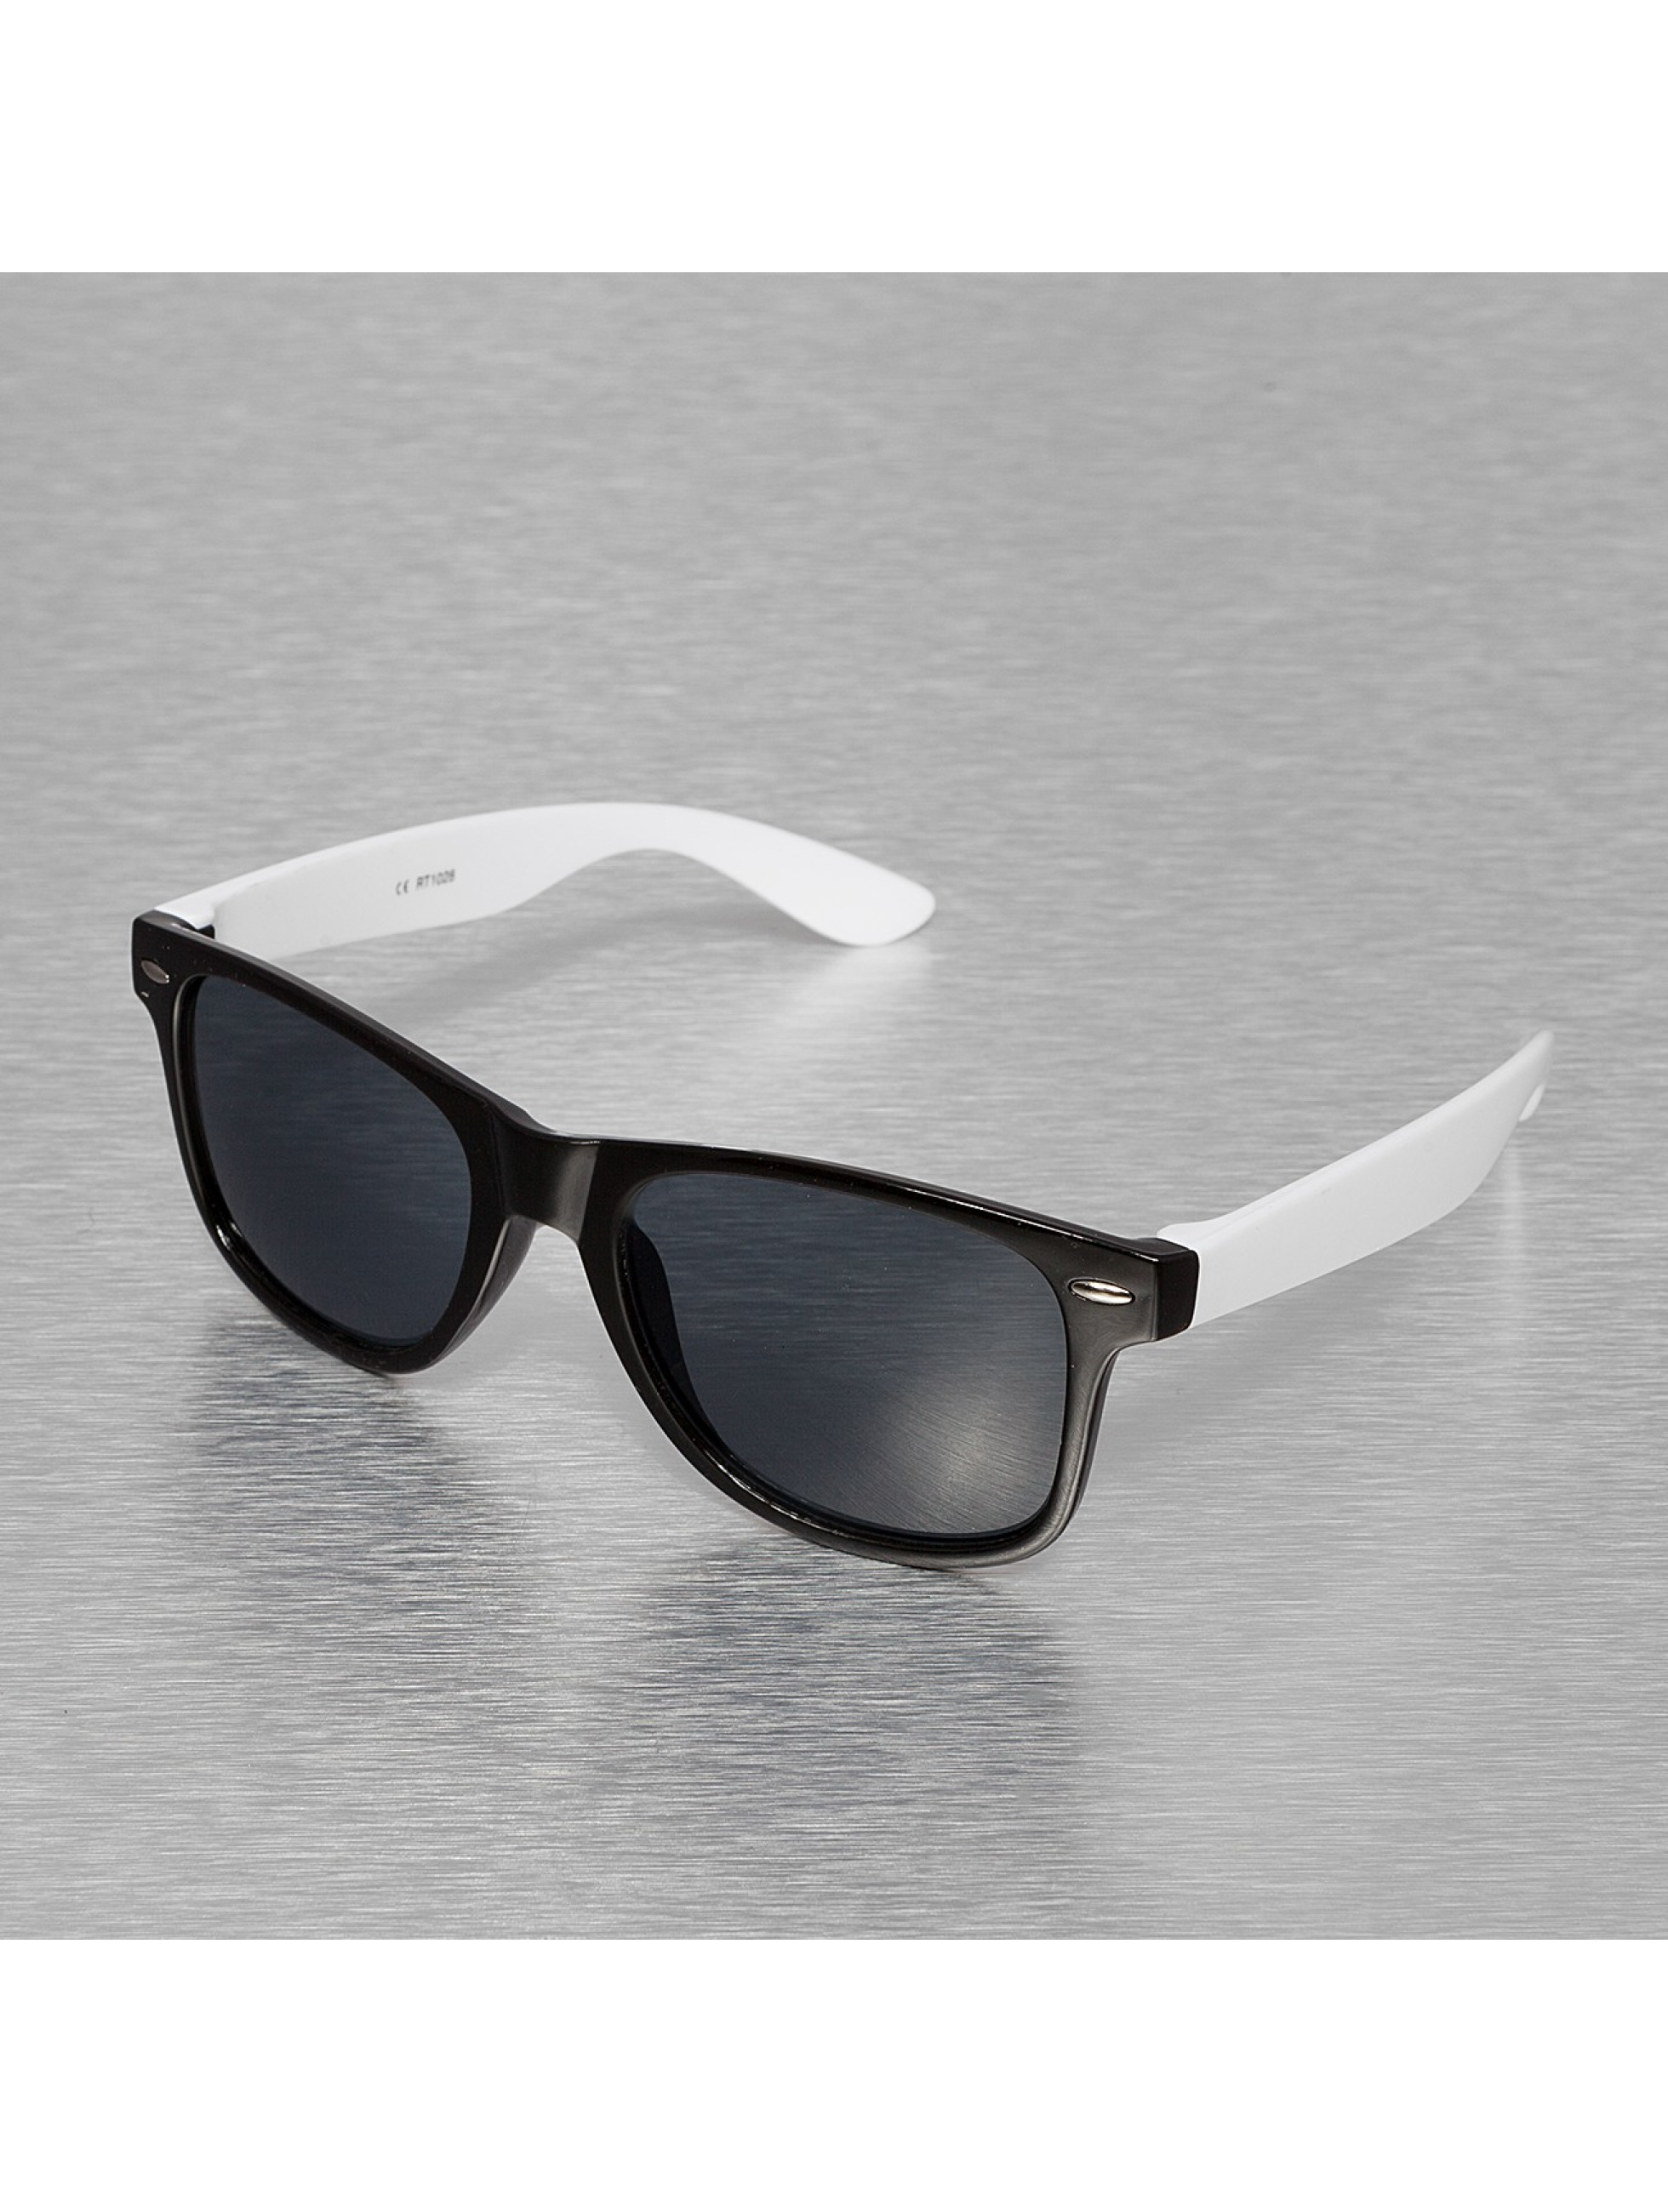 Miami Vision Accessoire / Sonnenbrille Vision in schwarz